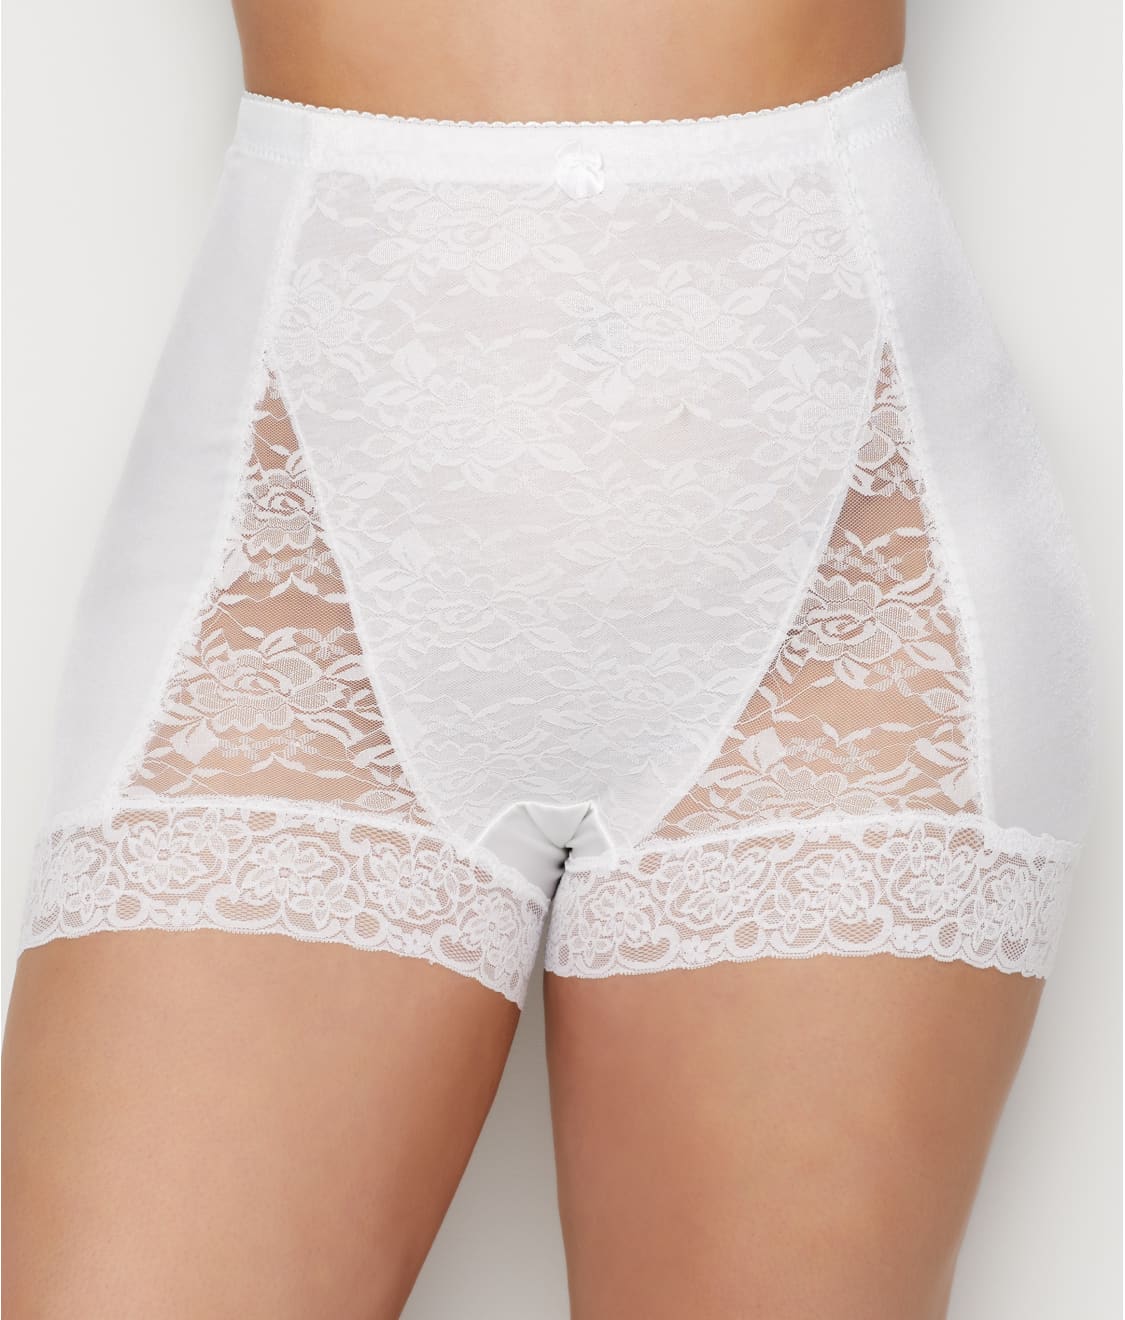 Rhonda Shear 100% Cotton Panties for Women